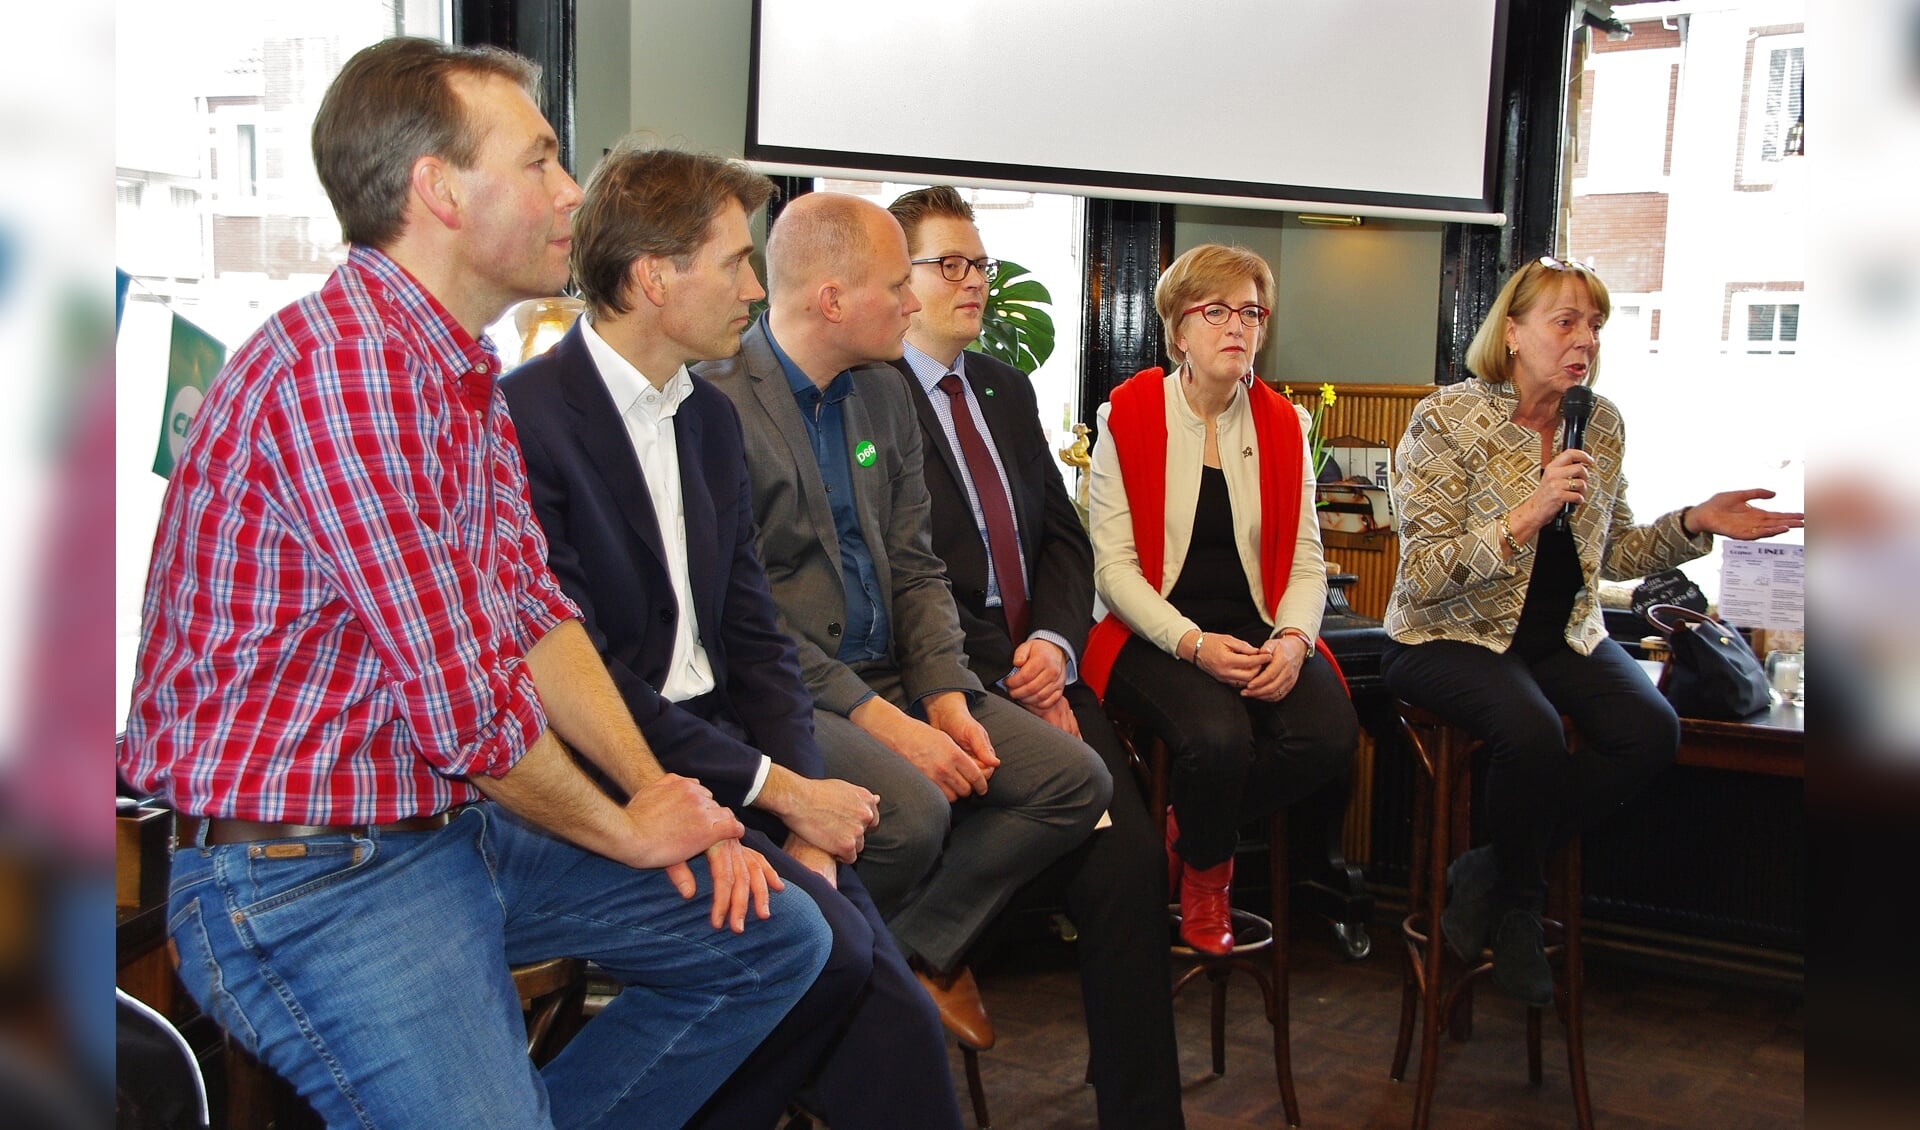 Vertegenwoordigers van de diverse partijen tijdens het zorgdebat in De Gouwe. | Foto's Willemien Timmers